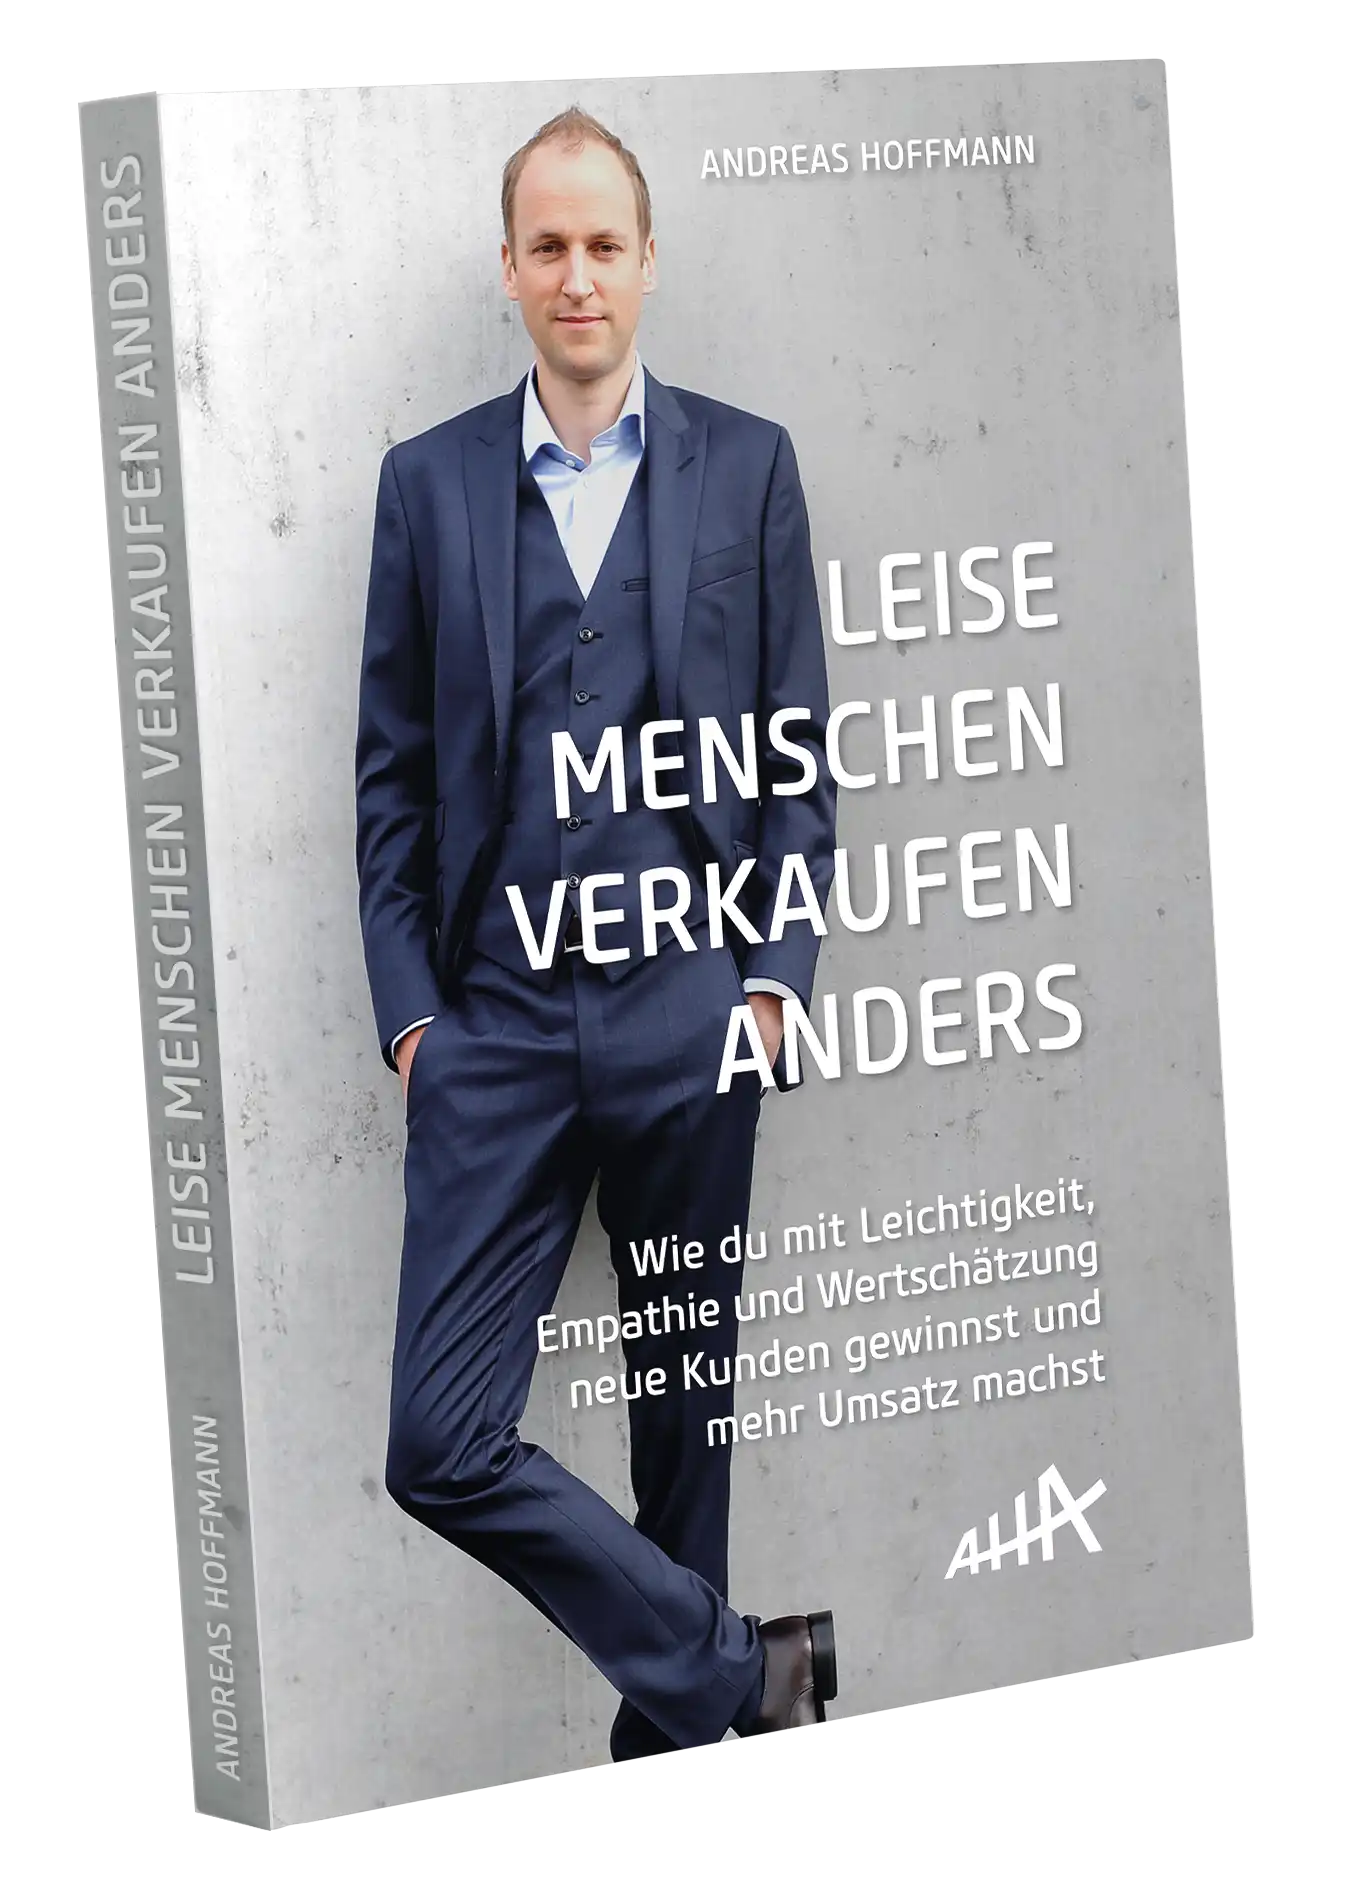 Andreas Hoffmann Akademie Buch Leiese Menschen verkaufen anders